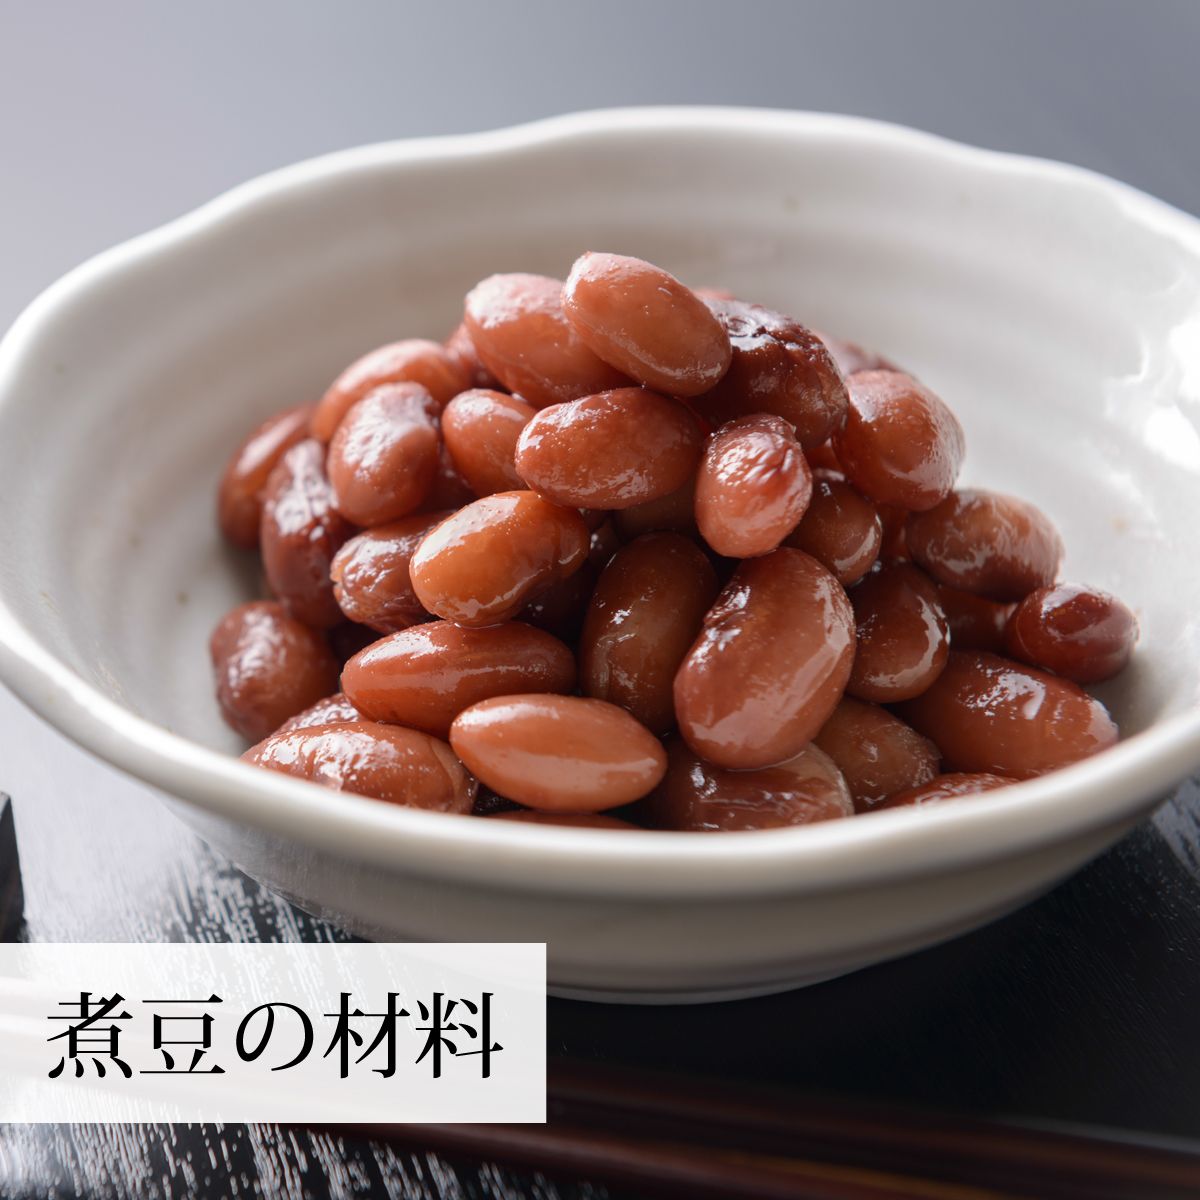 赤 いんげん豆 1kg×3個 金時豆 インゲン豆 レッドキドニー ビーンズ 豆類、もやし